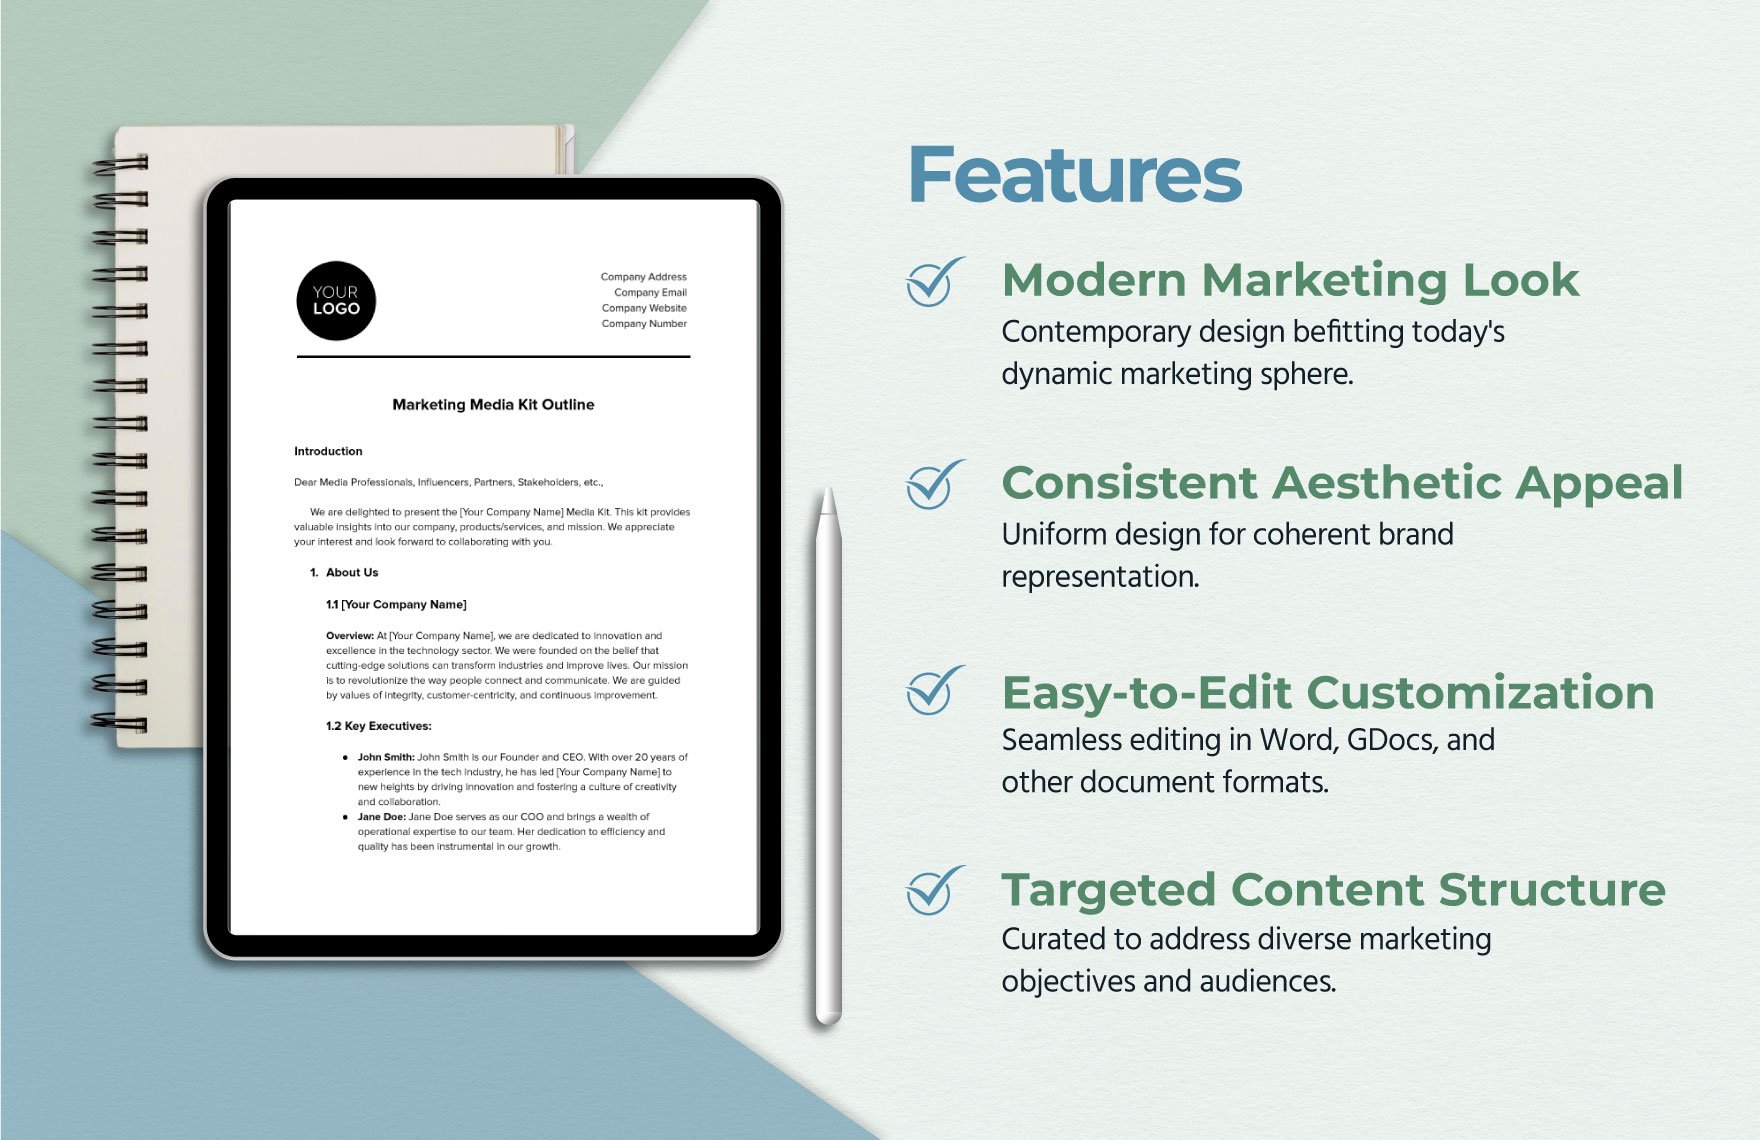 Marketing Media Kit Outline Template